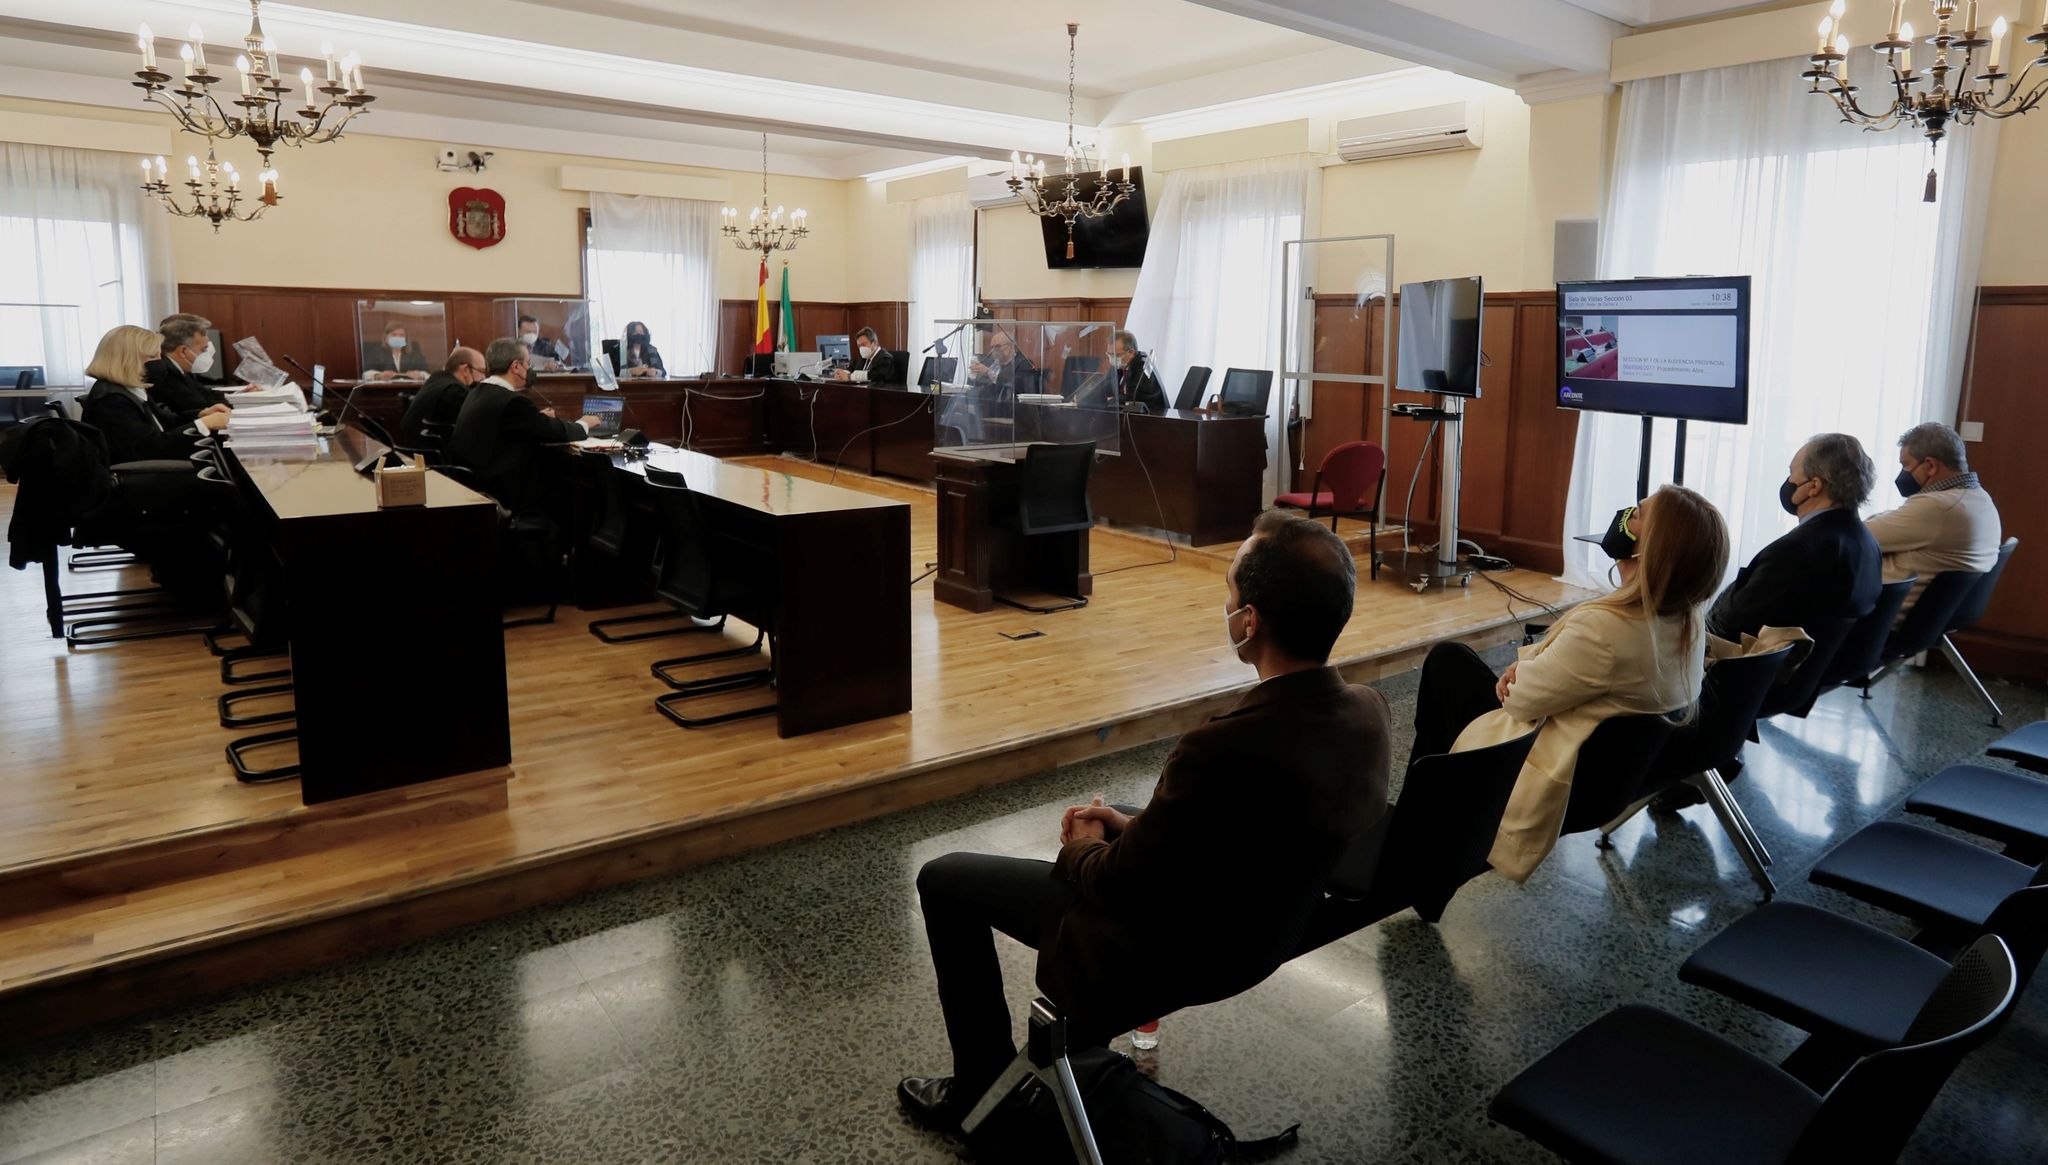 De espaldas, los cuatro acusados: Cristbal Cantos, Juana Martn, Prez-Sauquillo y Nieto, ante el tribunal que los juzga.